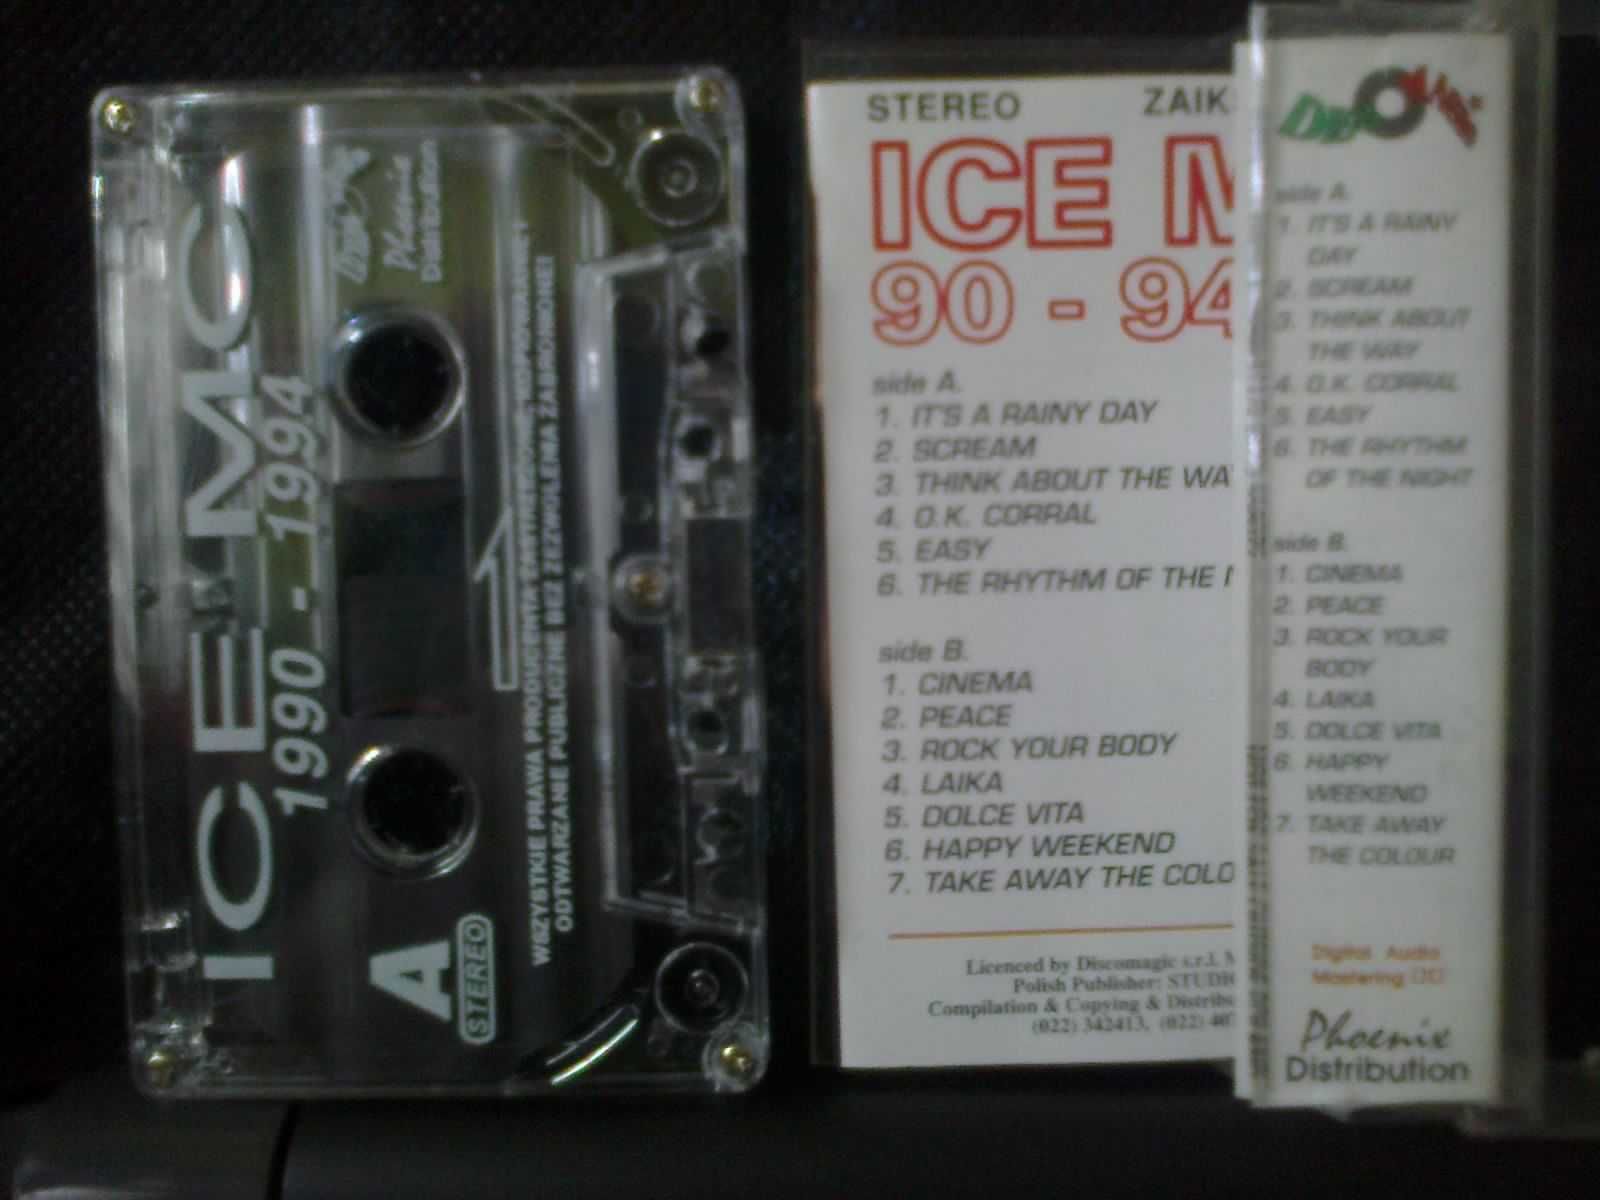 Kaseta Audio ICE MC 90-94 hologram